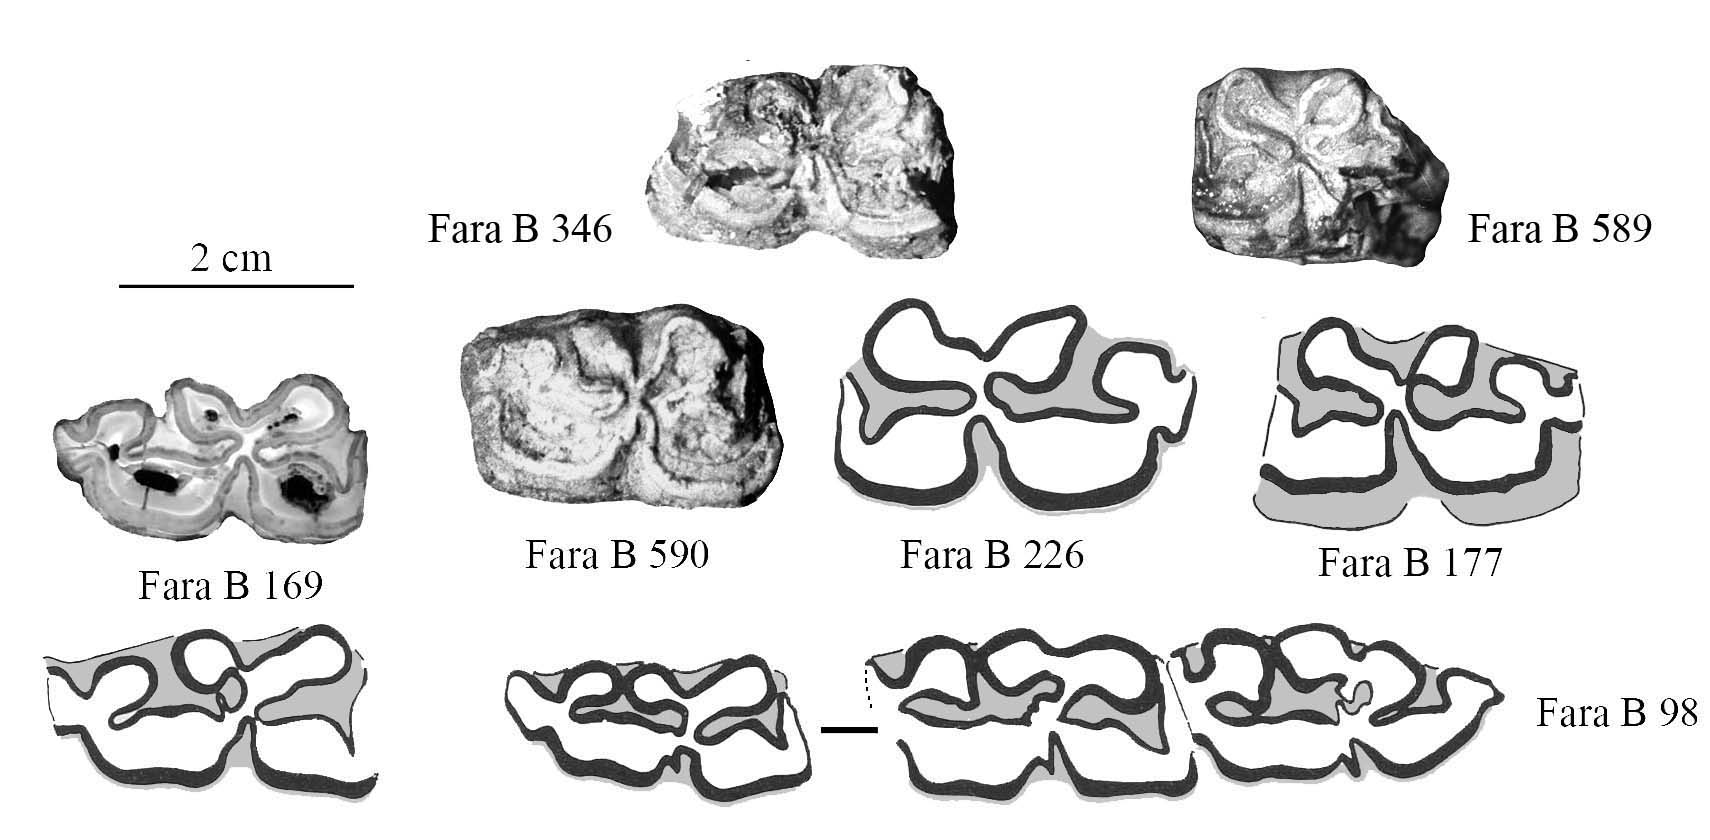 Pl. Fara B JI (Lower Cheek teeth)